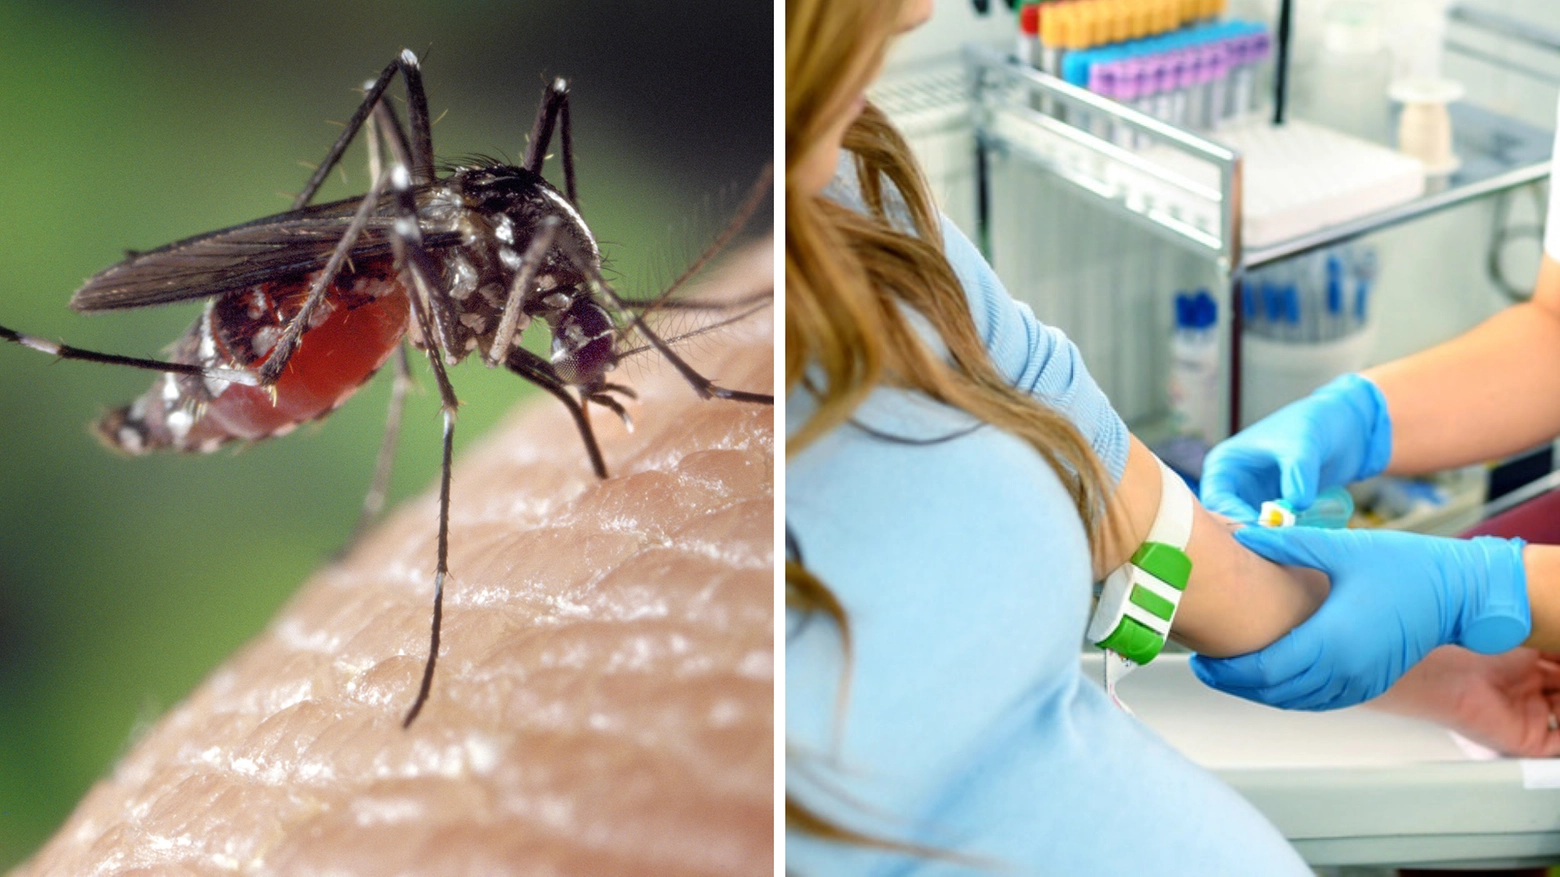 La malattia portata dalla zanzara Aedes può provocare rush e dolore intenso alla testa e dietro agli occhi